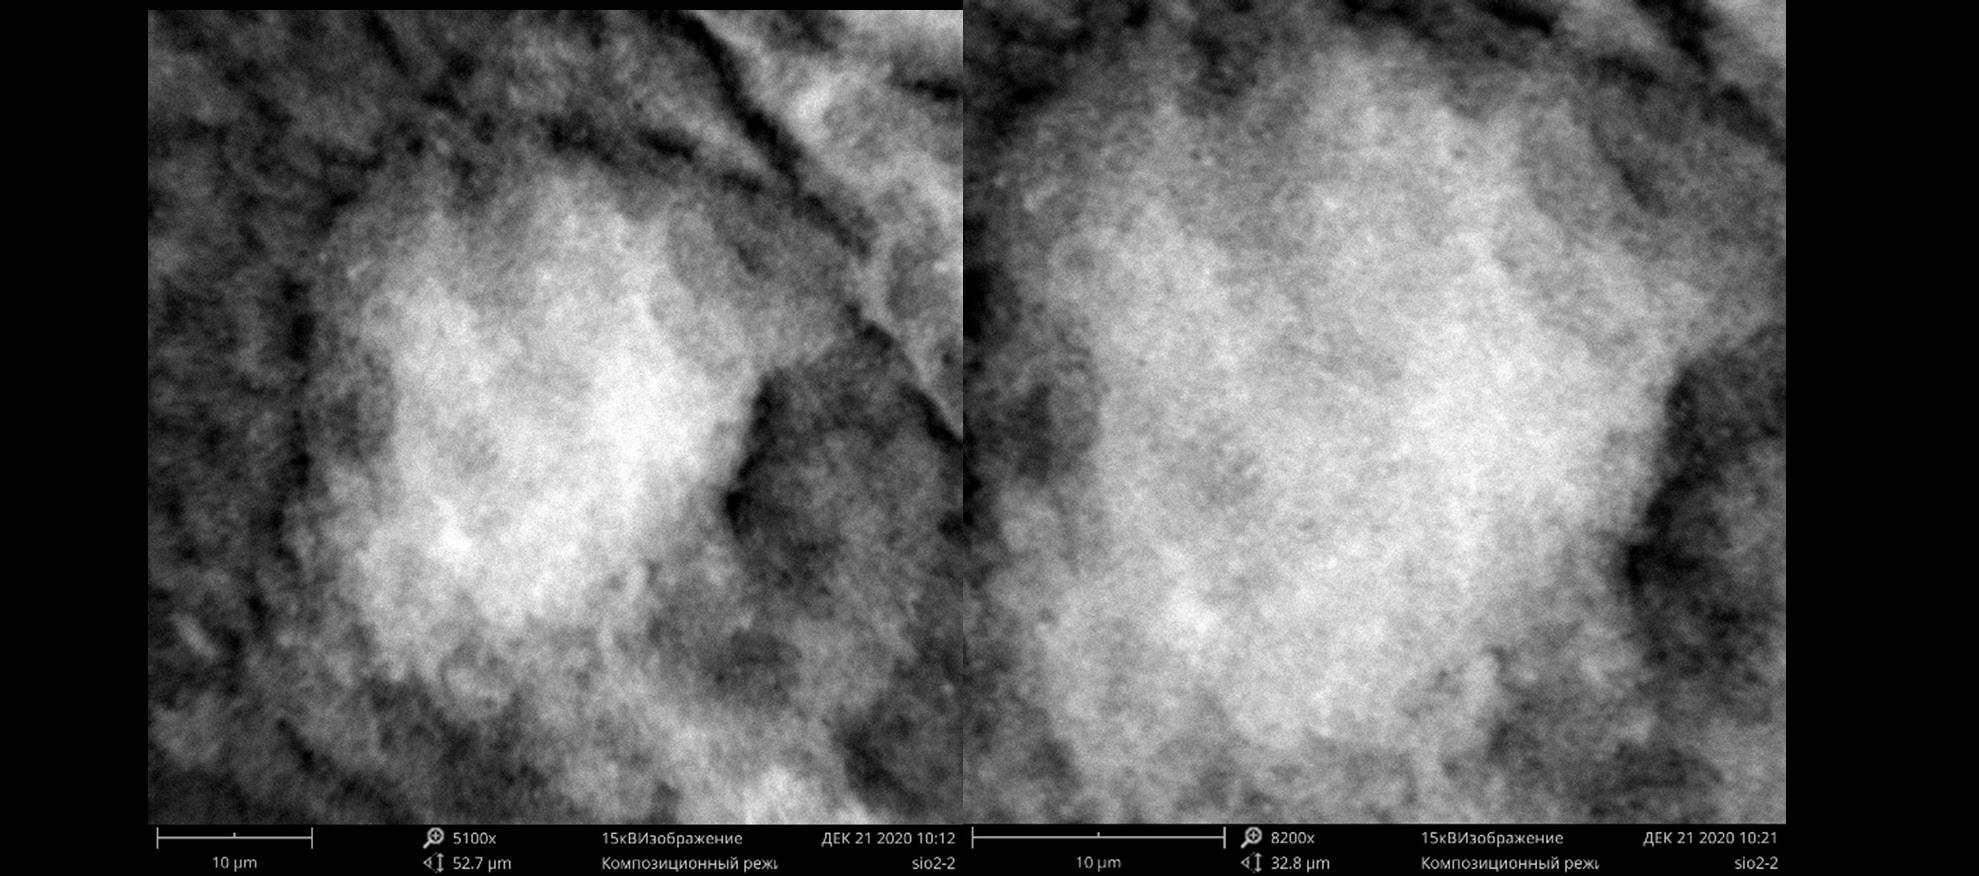 Нанопорошок диоксида кремния:слева – увеличение в 5100 раз, при общей длине фотокадра в 52,7 мкм; справа – увеличение в 8200 раз, при общей длине фотокадра 32,8 мкм